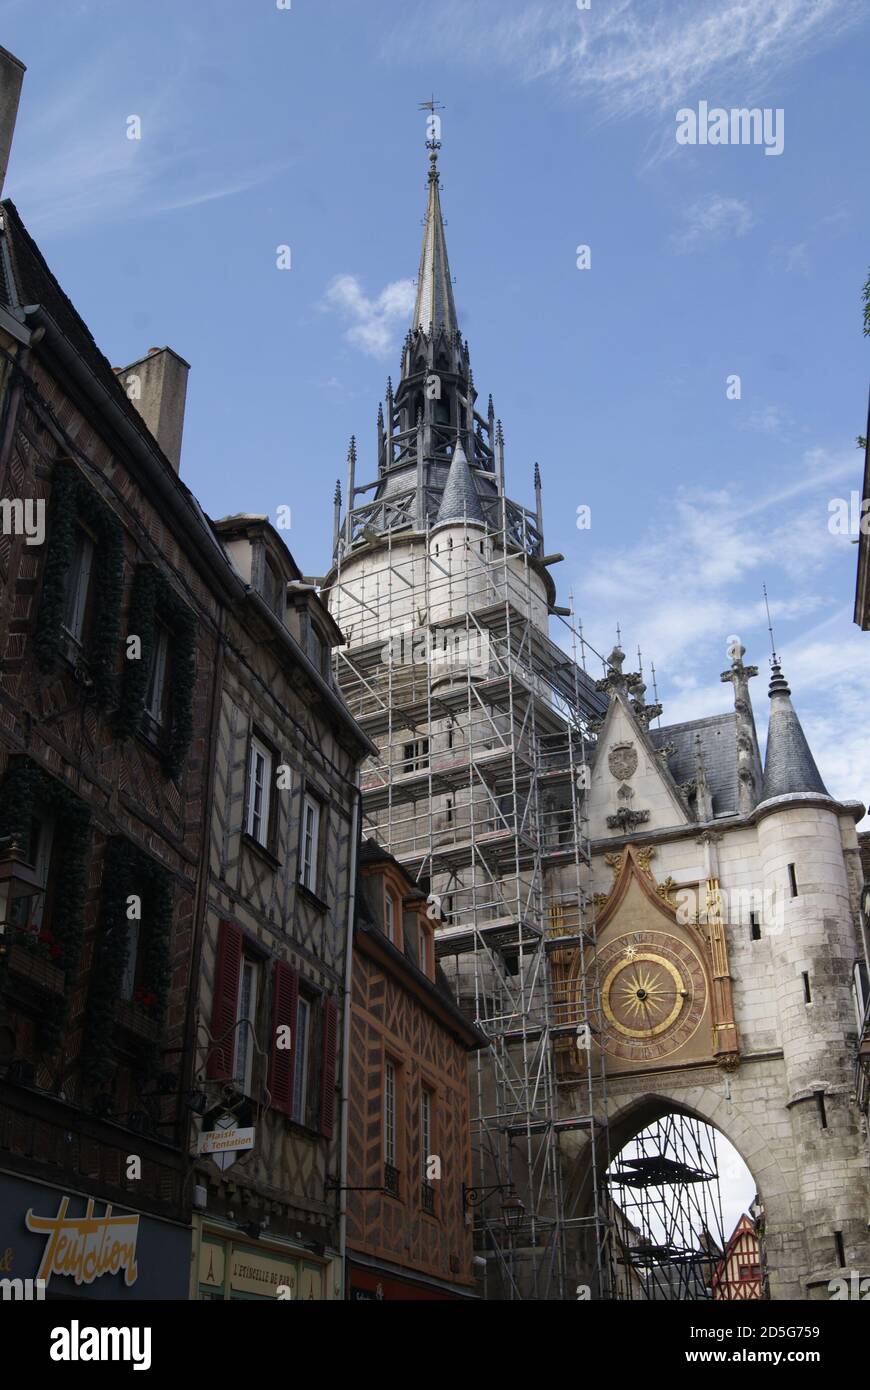 Échafaudage sur la Tour d'Horloge d'Auxerre, Yonne, Frankreich Stockfoto